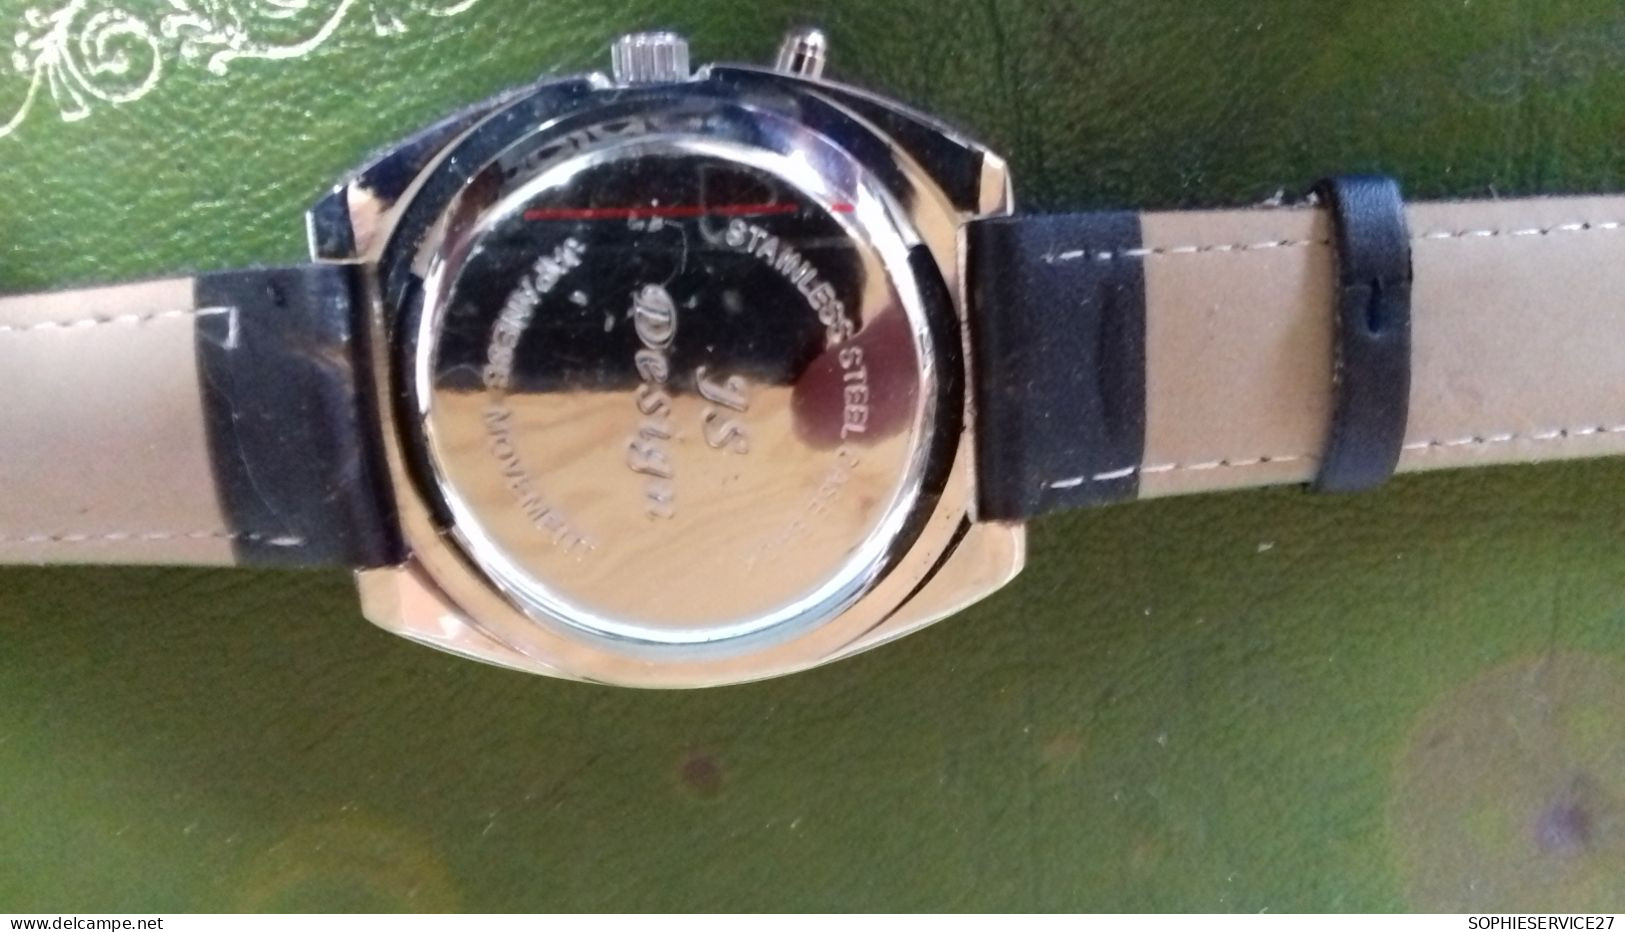 B5 / MONTRE JS DESIGNE QUARTZ MOUVEMENT JAPONAIS COMME NEUVE - Watches: Modern